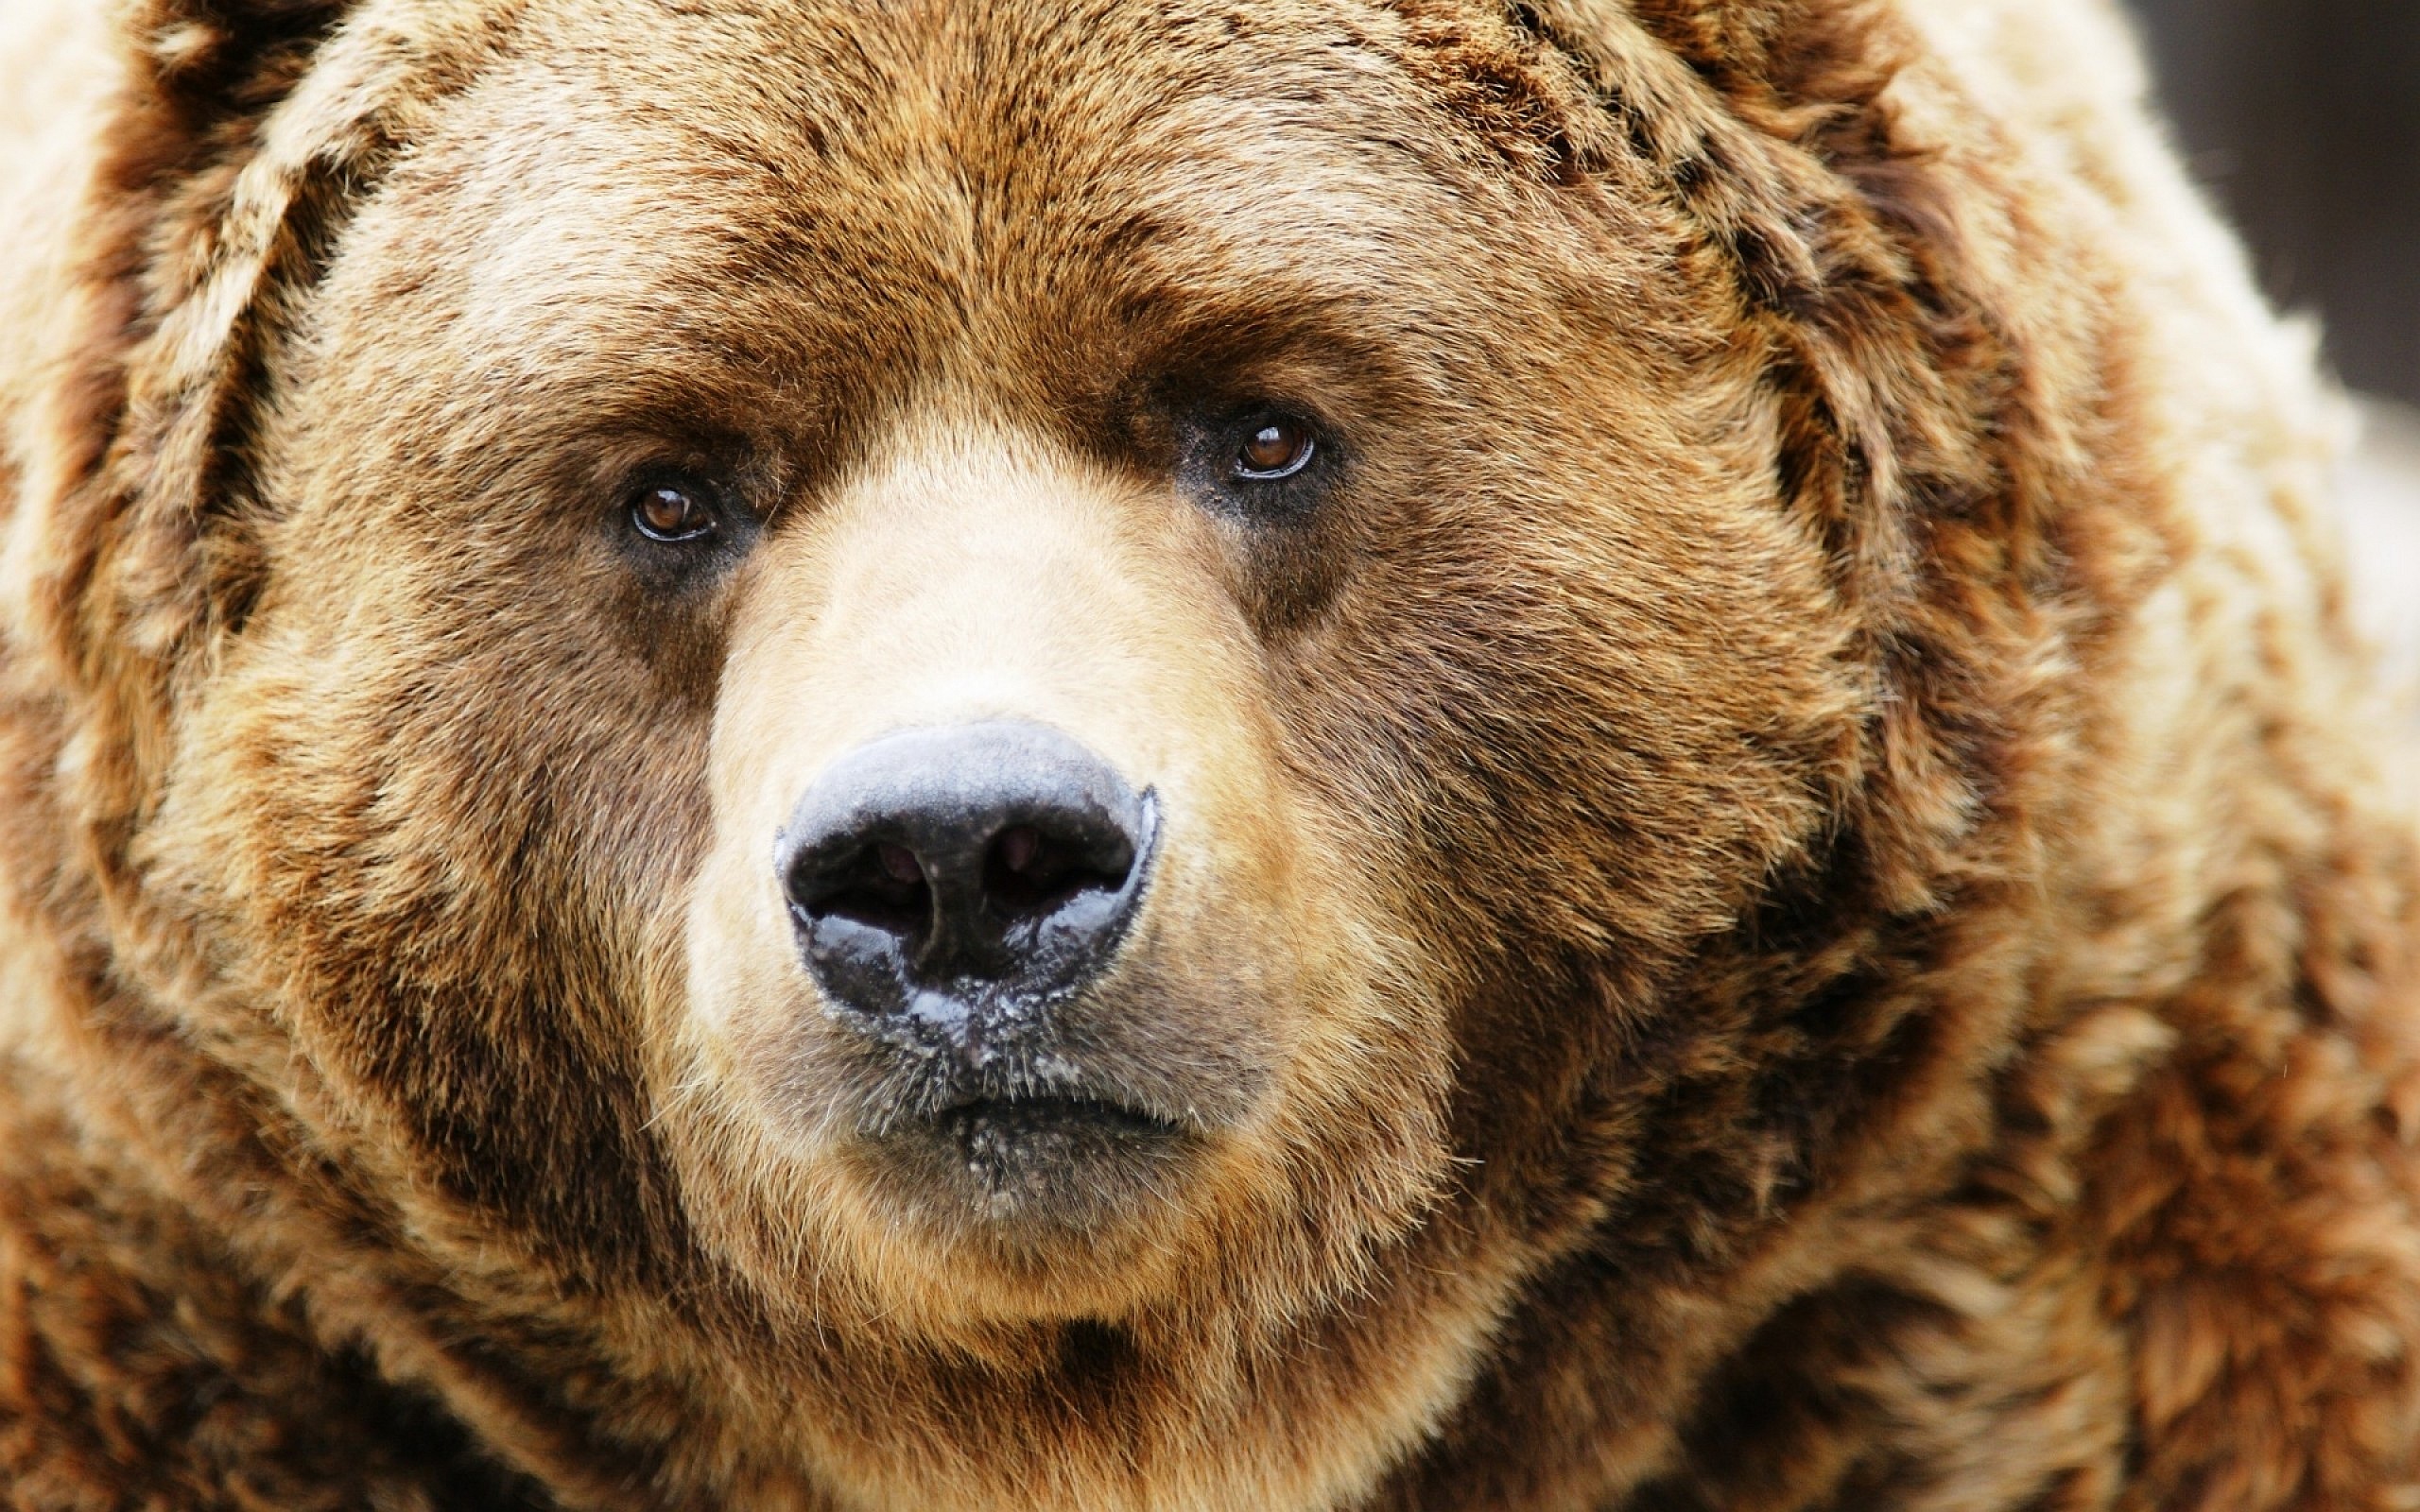 Fluffy bears face